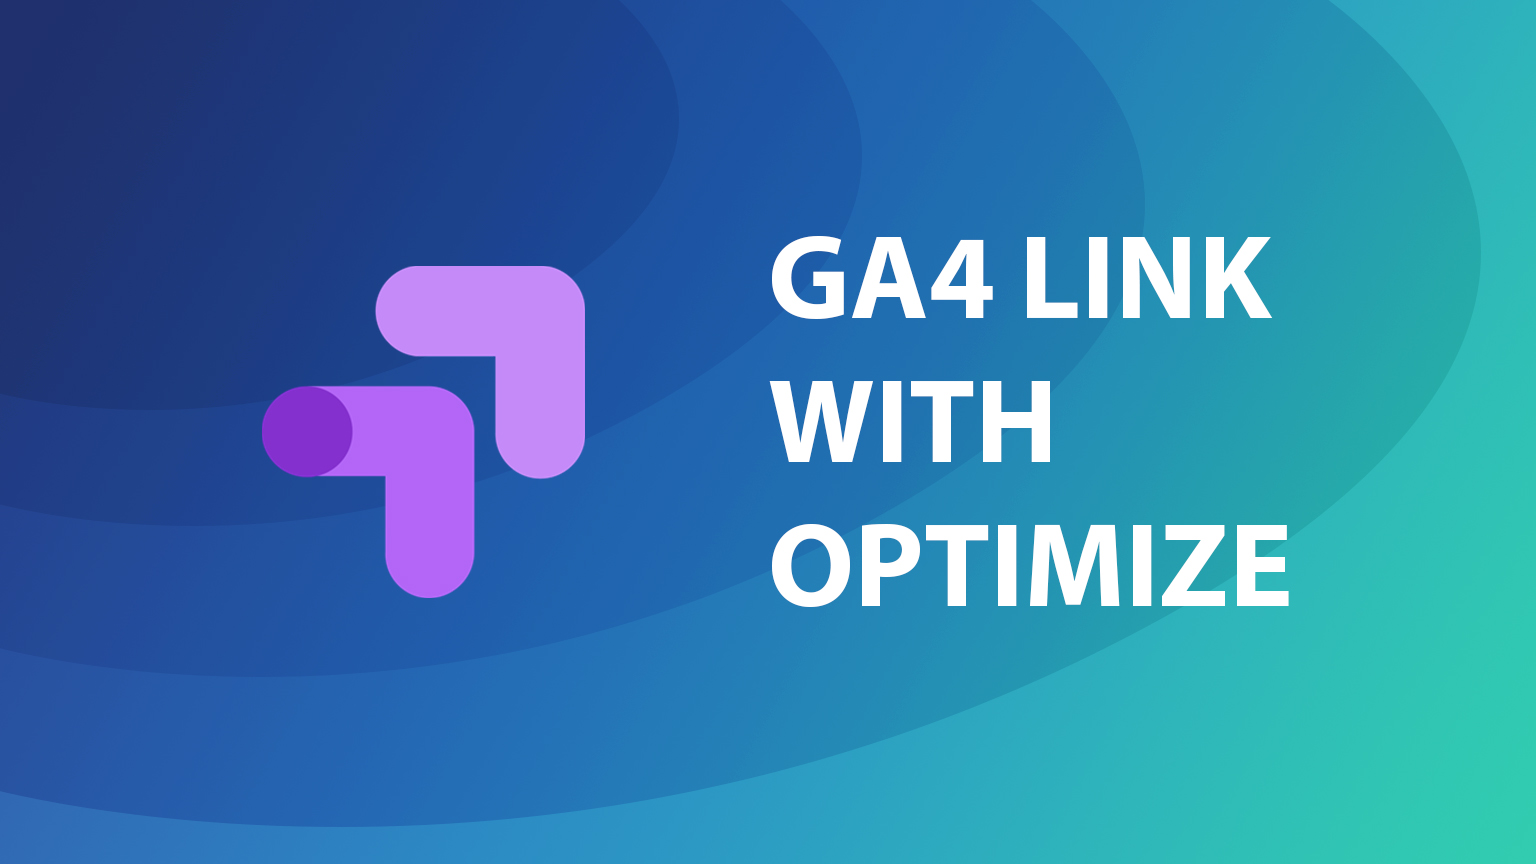 Link GA4 with Google Optimize